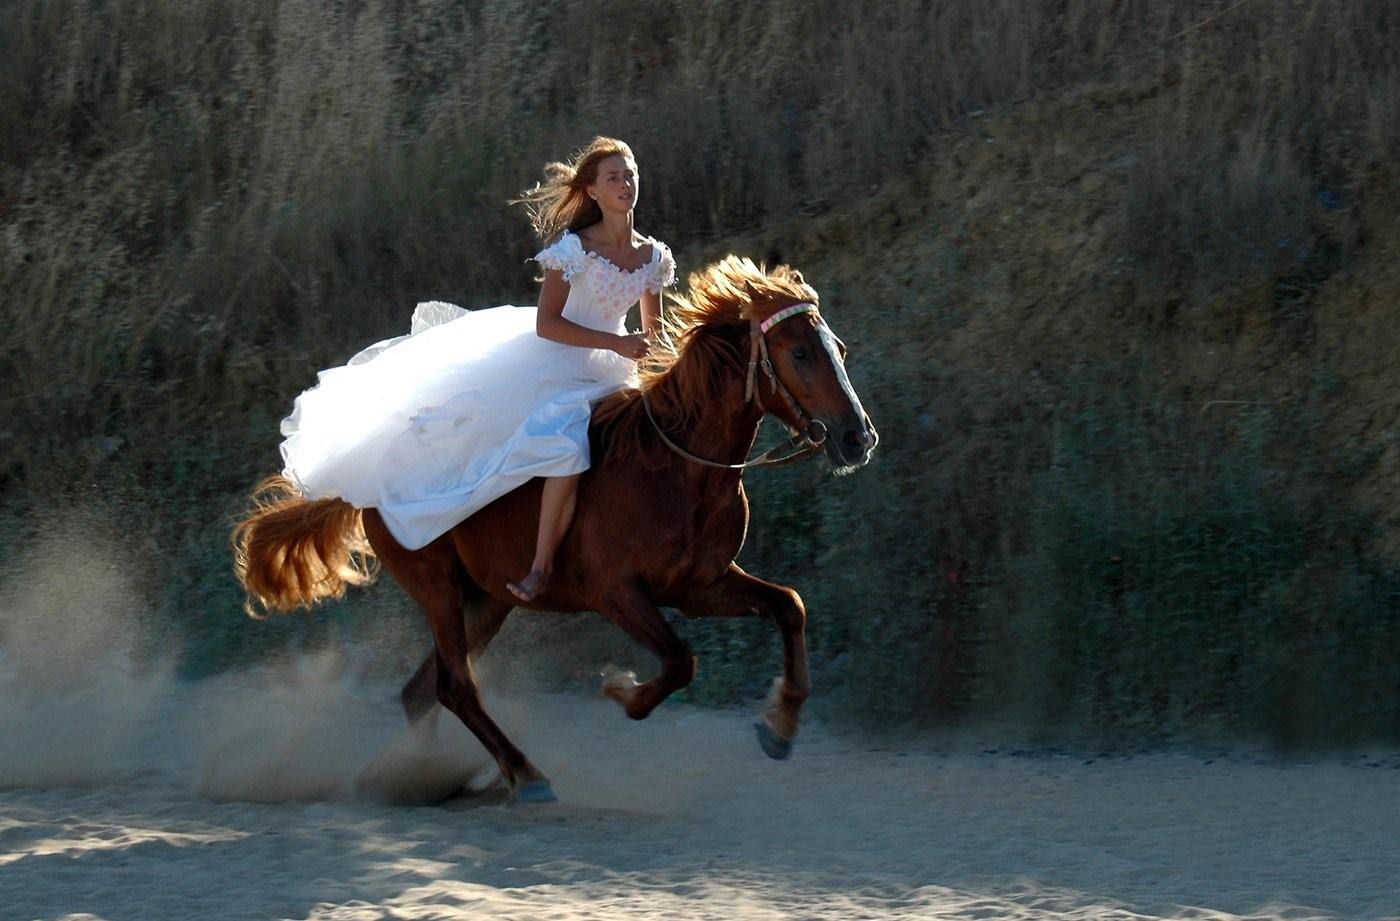 Догнал красивую. Девушка верхом на лошади. Женщина на коне. Девушка на коне верхом. Девушка скачет на лошади.